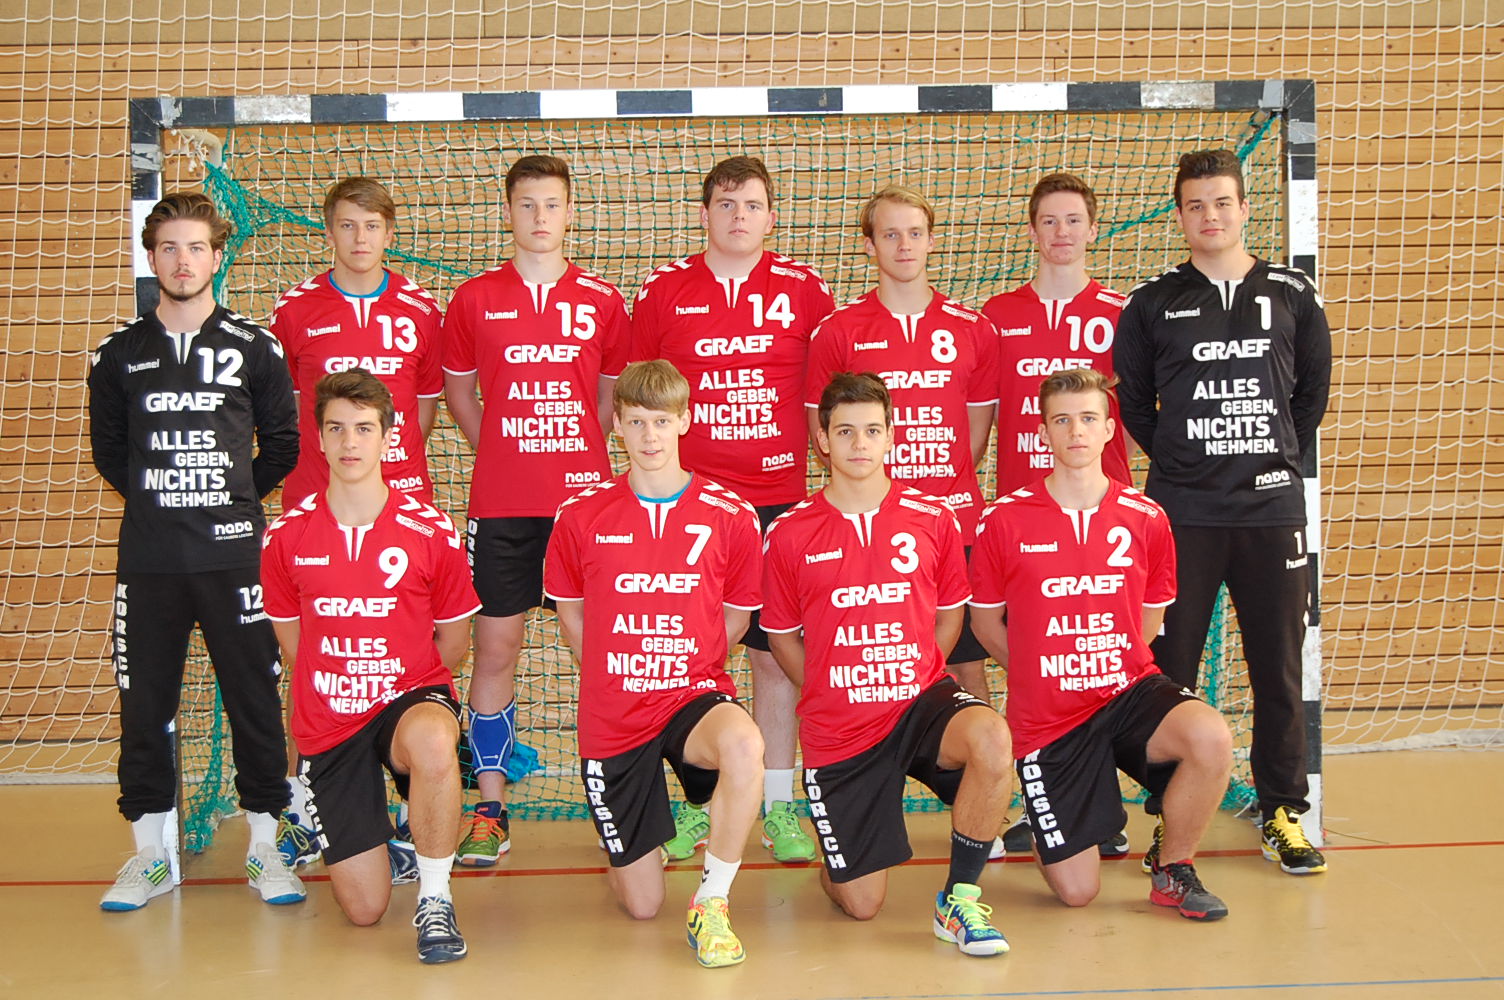 Gruppenbild der Handballmannschaft SG Hermdsdorf-Waidmannslust, die Spruch ALLES GEBEN, NICHTS NEHMEN auf ihrem Aufwärmtrikot tragen